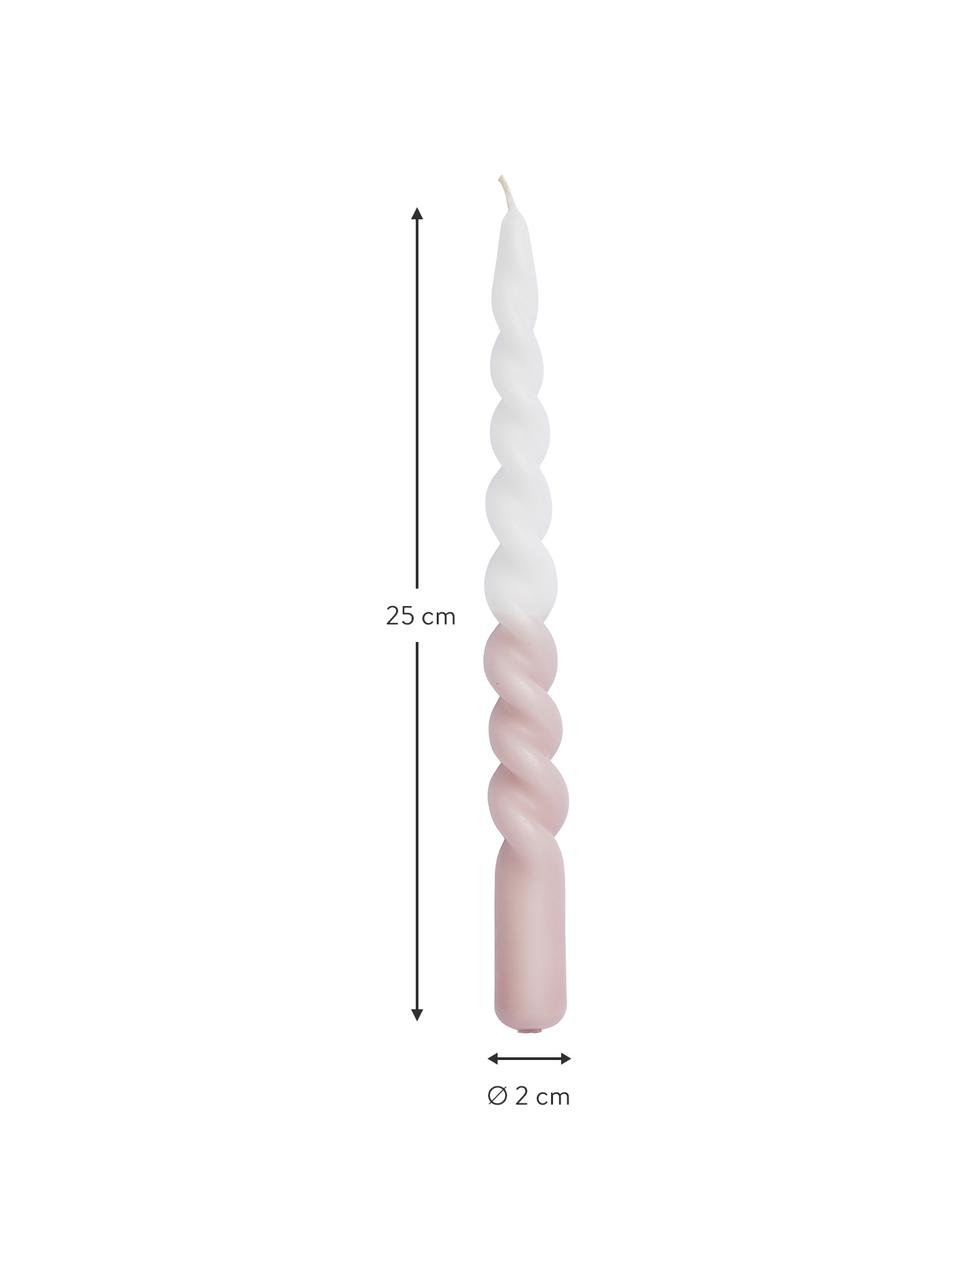 Stabkerzen Twister in Weiß/Rosa, 2 Stück, Paraffinwachs, Weiß, Rosa, Ø 2 x H 25 cm